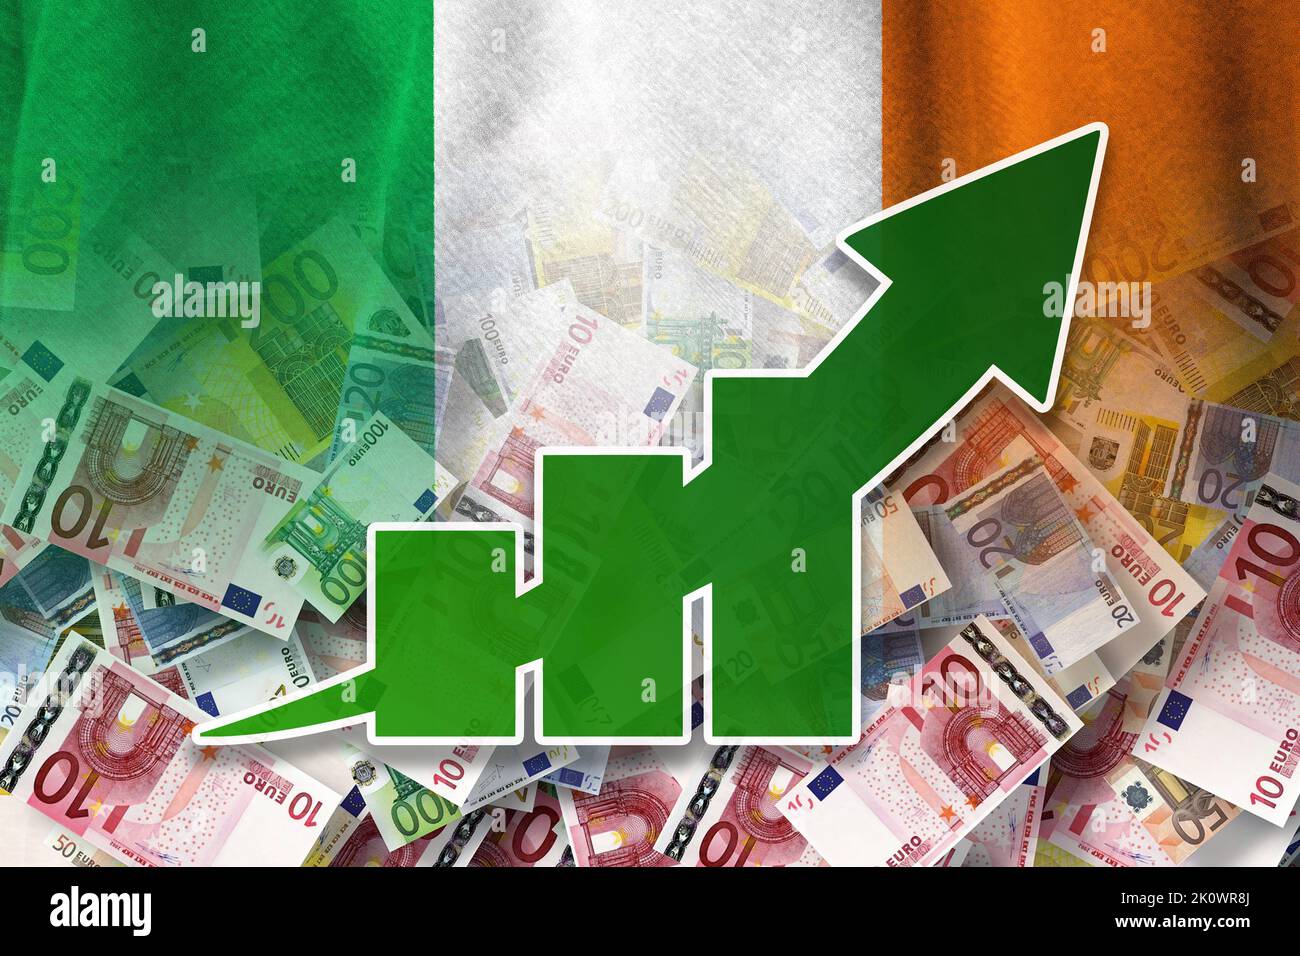 Wirtschaftsdiagramm: Steigender Pfeil, Bargeldscheine und Irland-Flagge (Geld, Wirtschaft, Unternehmen, Finanzen, Krise) Stockfoto